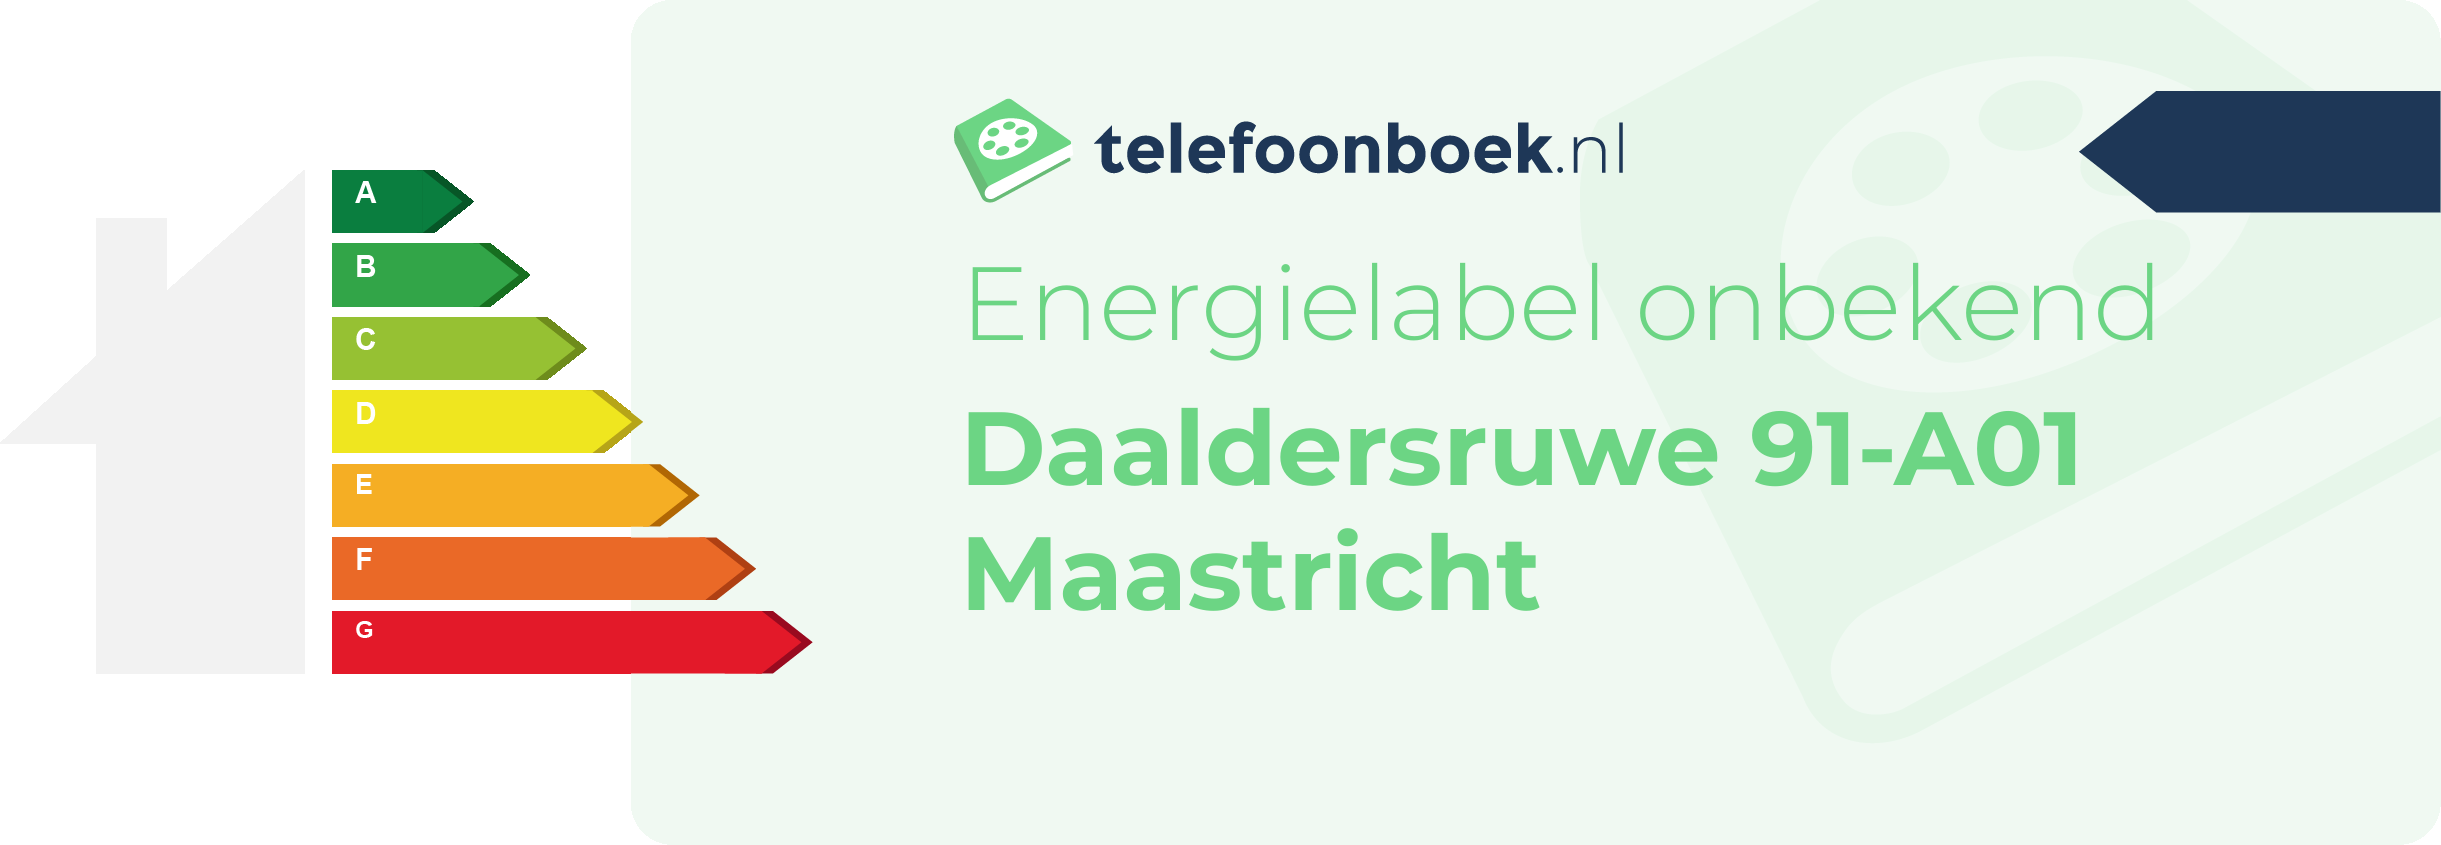 Energielabel Daaldersruwe 91-A01 Maastricht